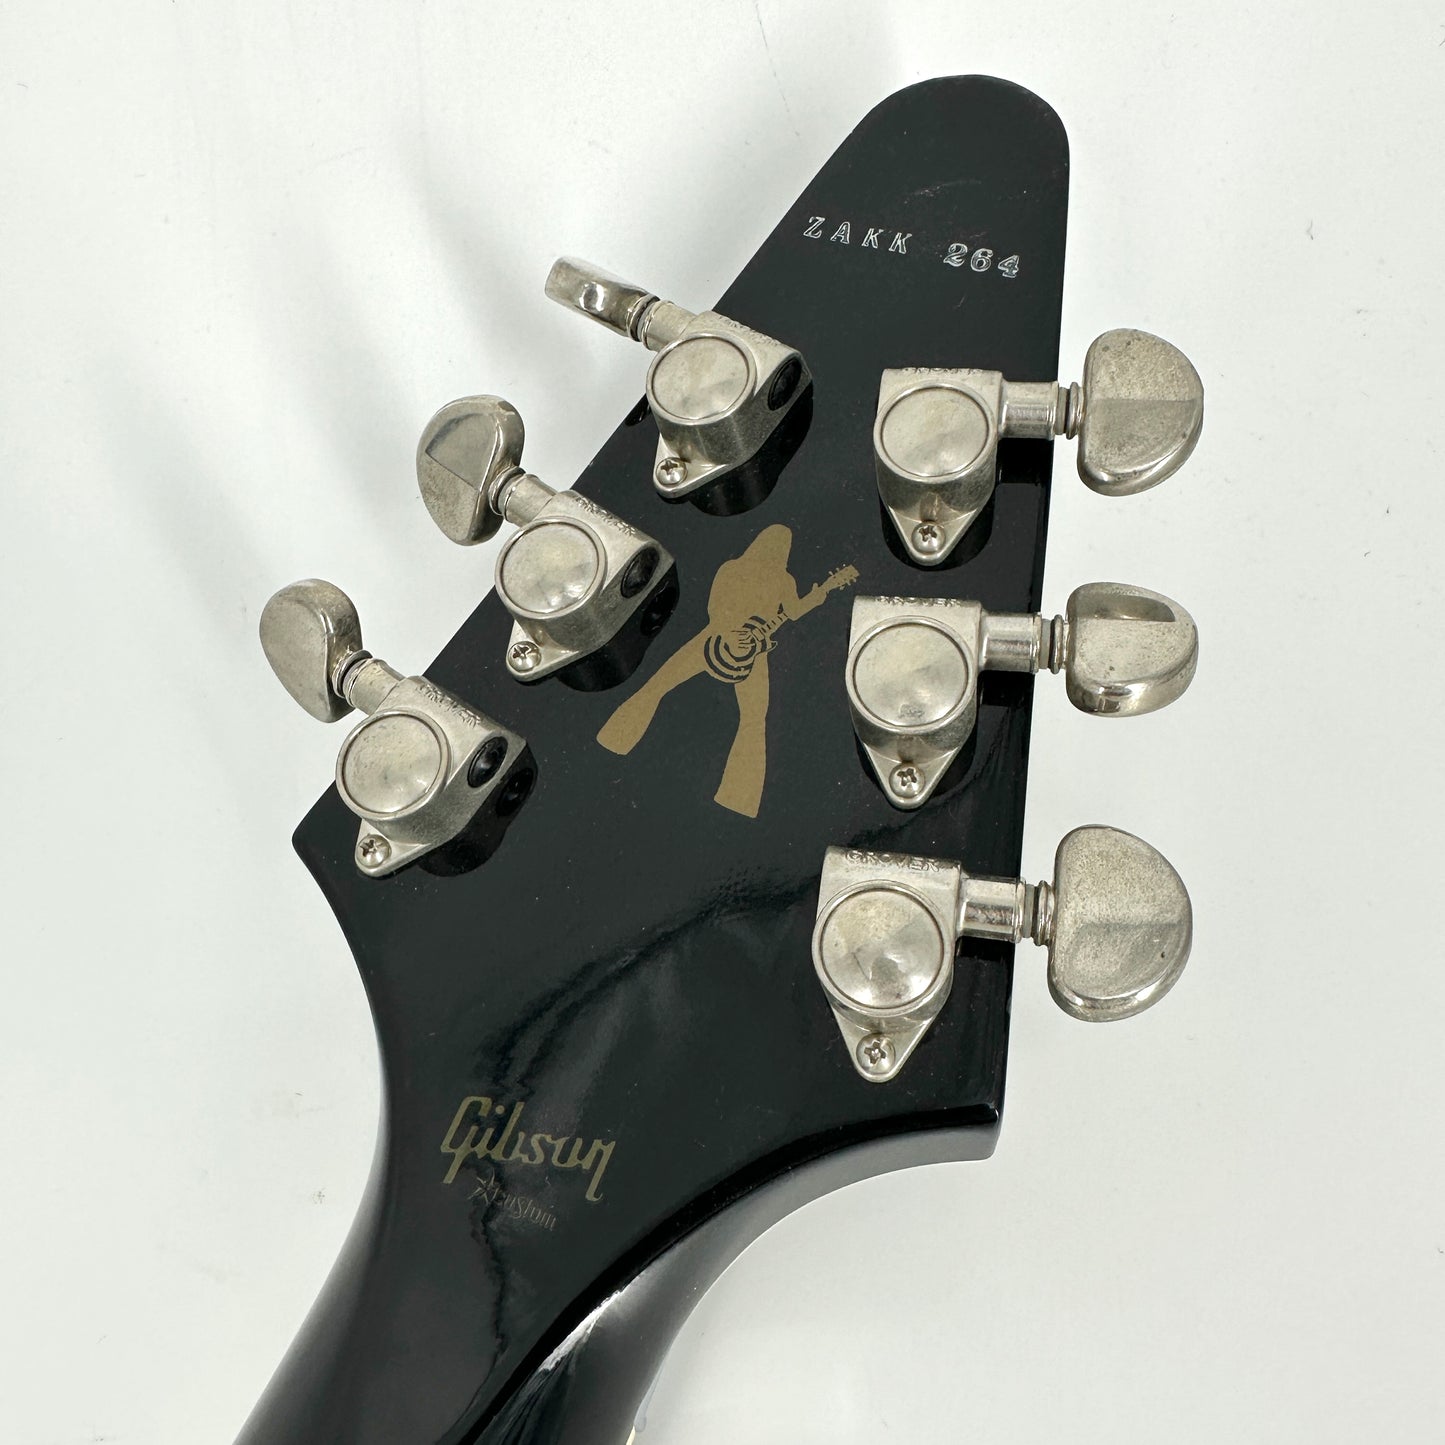 2007 Gibson Custom Zakk Wylde Signature Flying V - Bullseye